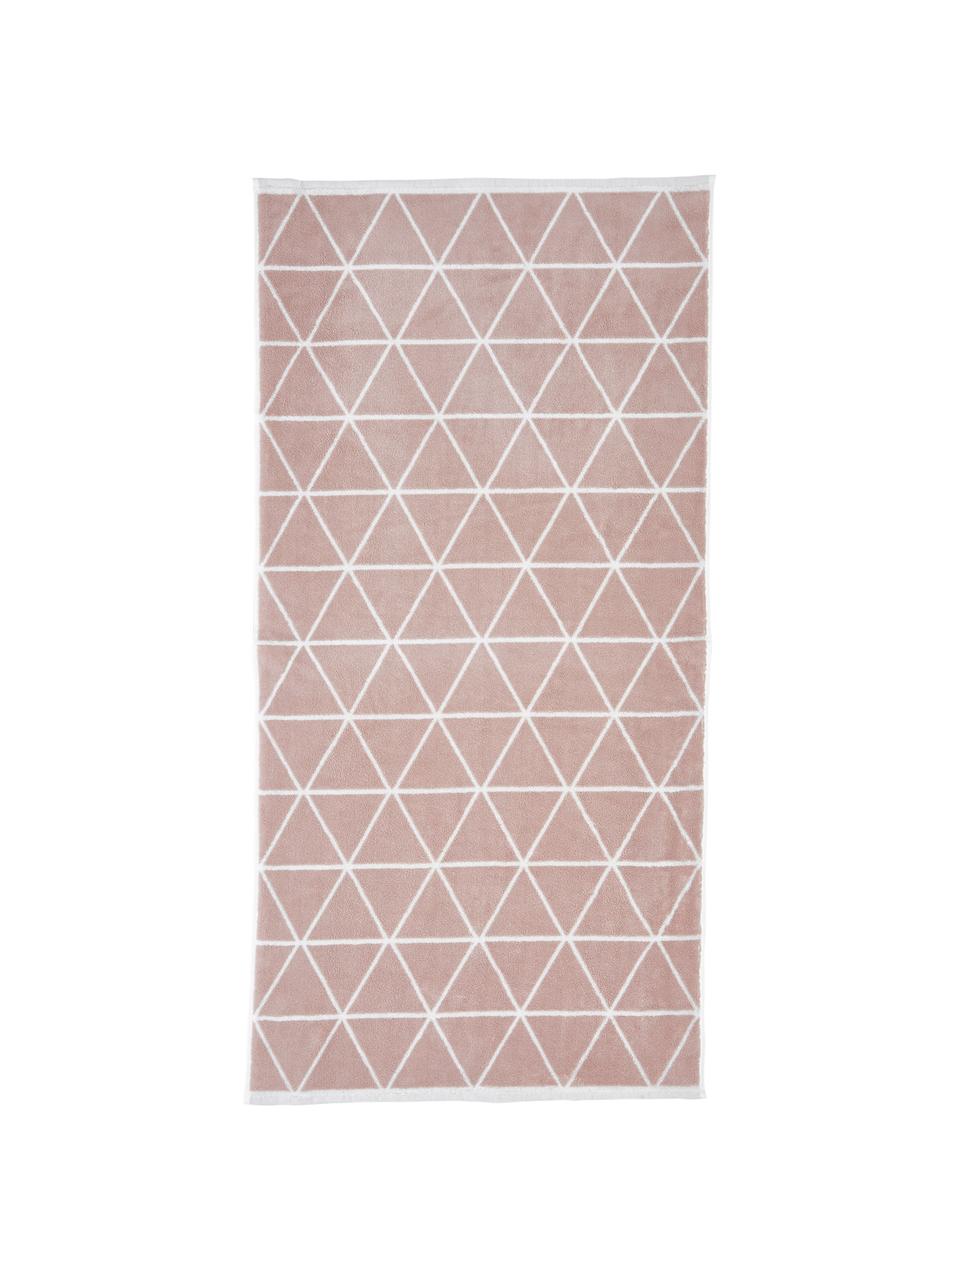 Dubbelzijdige handdoekenset Elina met grafisch patroon, 3-delig, Roze, crèmewit, Set met verschillende formaten